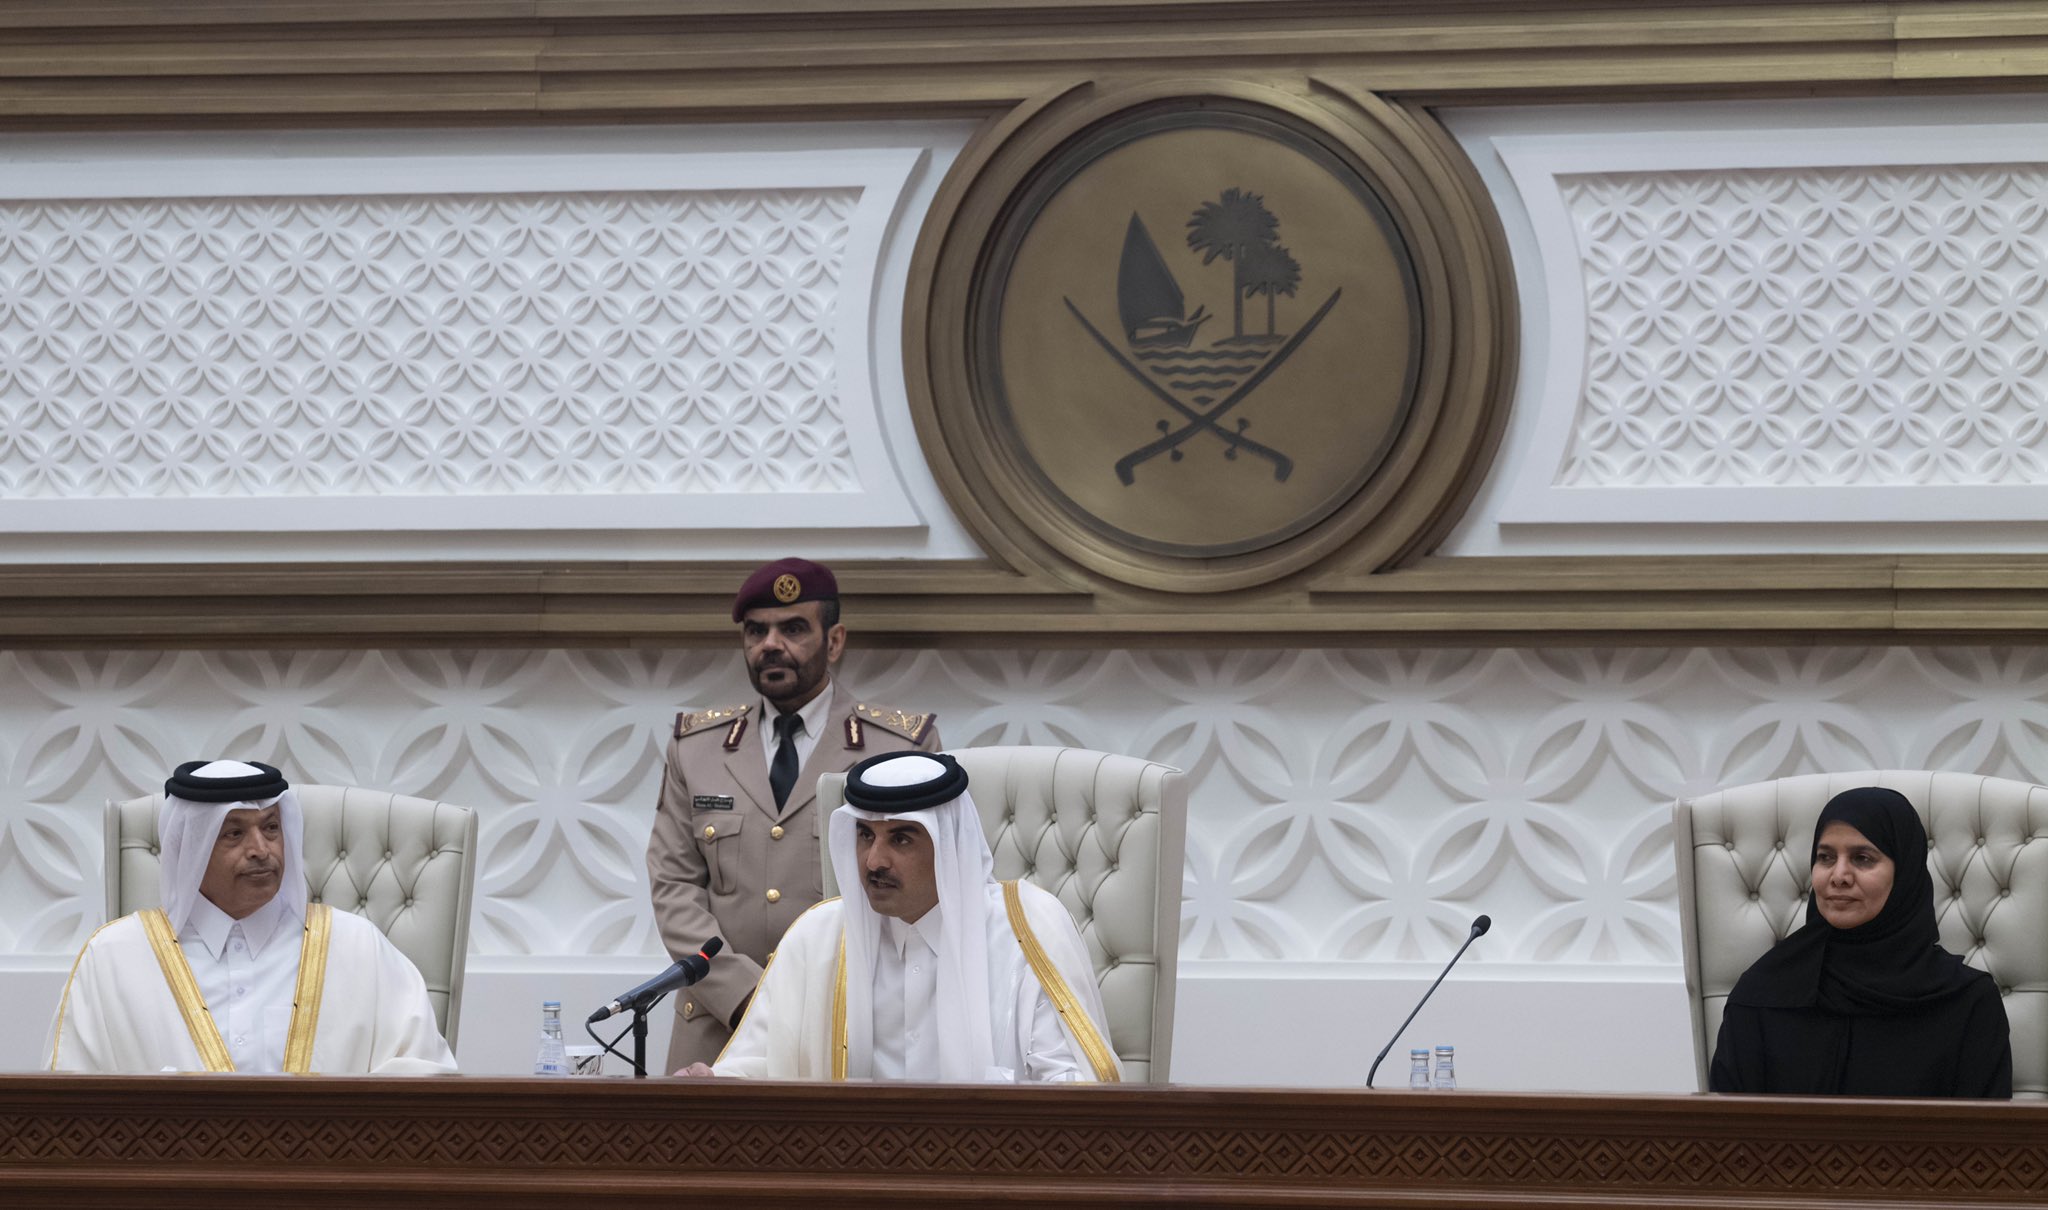 نائب رئيس مجلس الشورى: افتتاح سمو الأمير لدور الانعقاد يمثل دافعاً للمجلس لبذل المزيد